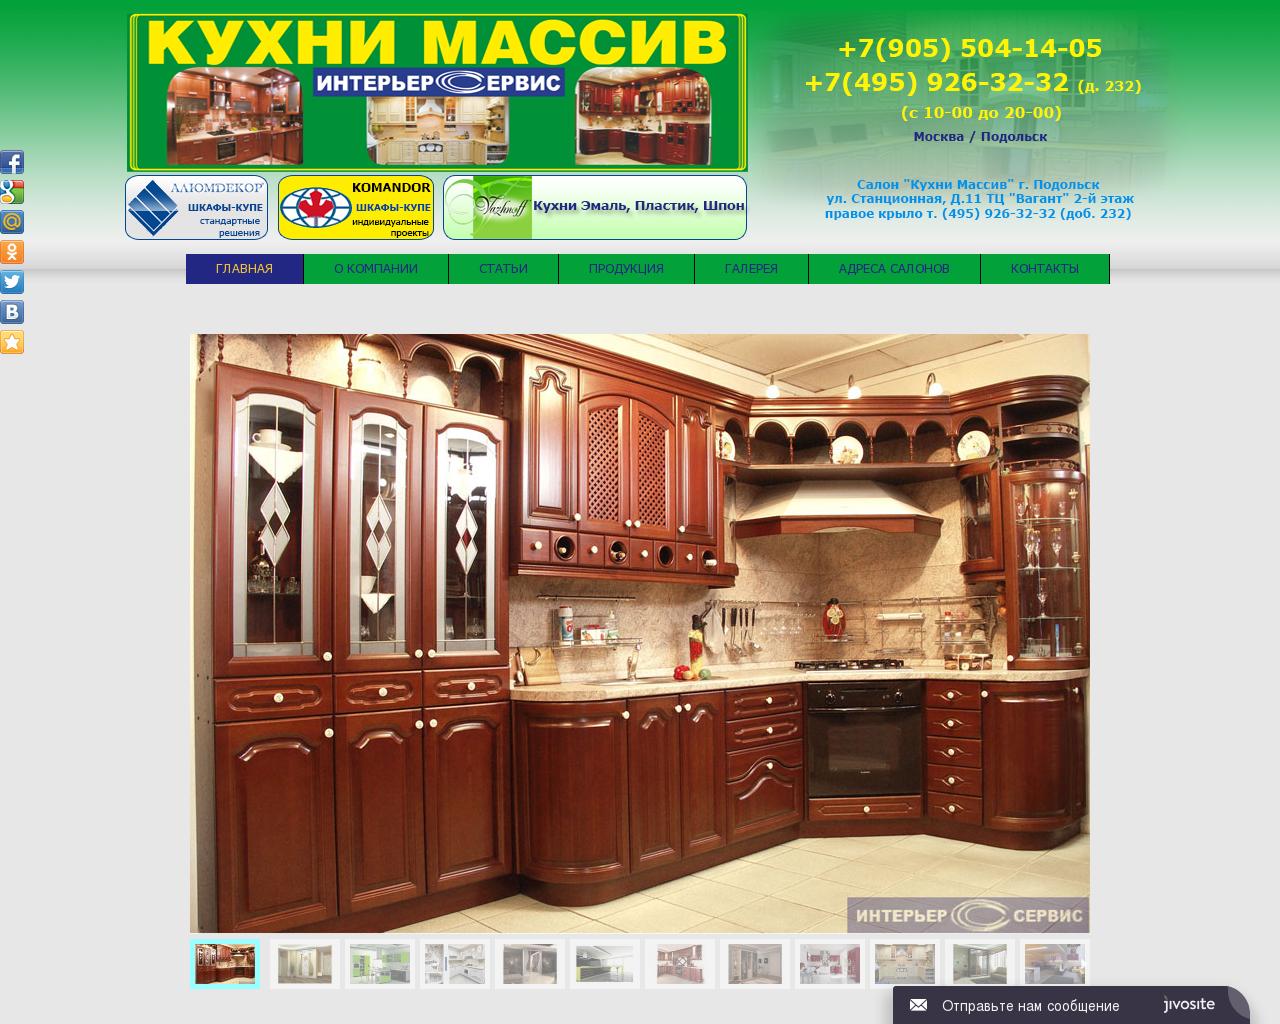 Изображение сайта kuhni-massiv.ru в разрешении 1280x1024